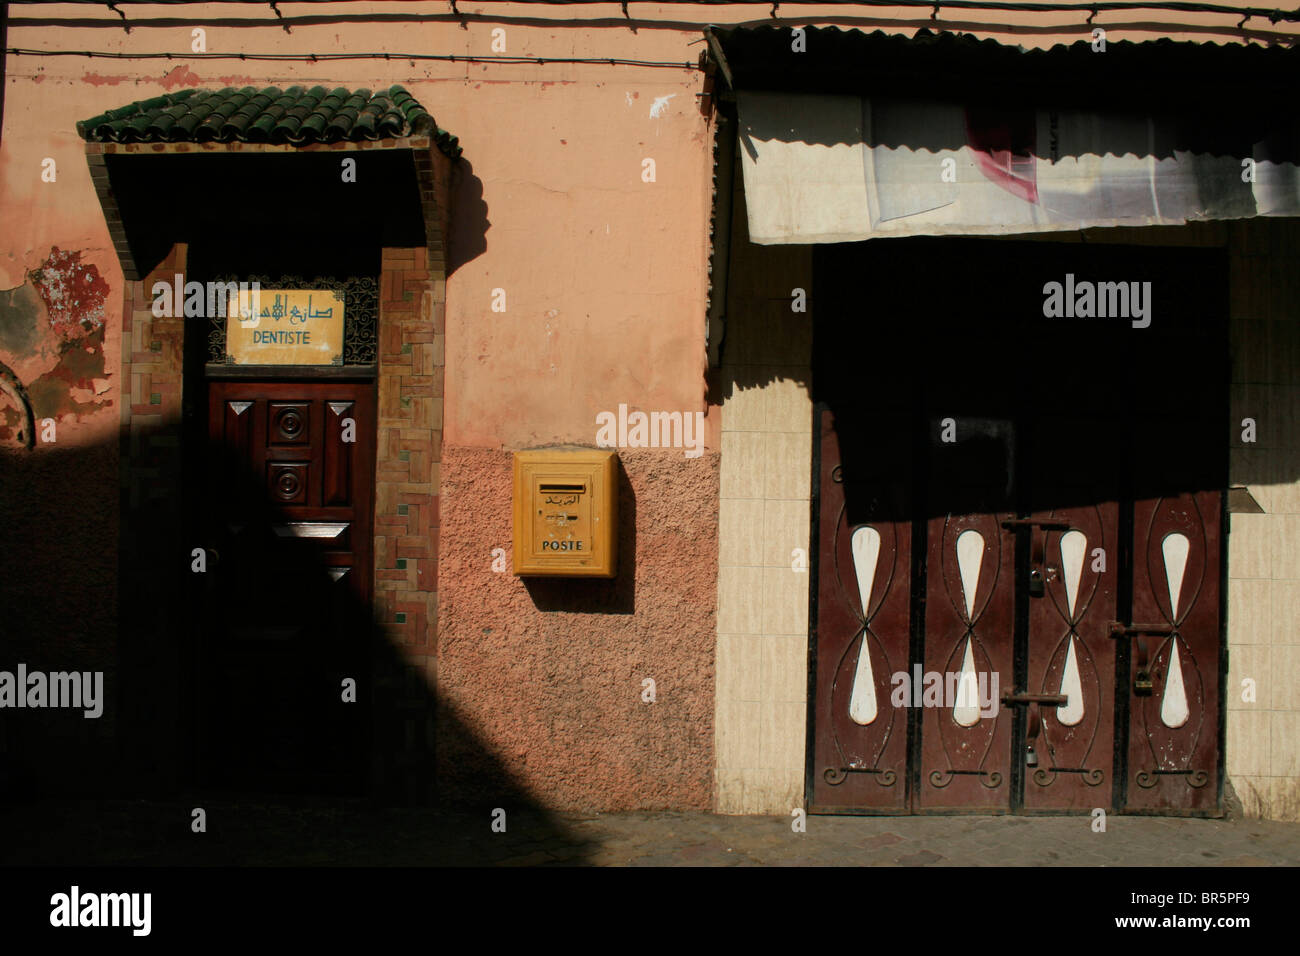 11 settembre 2009; un dentista e una casella di posta è visto nella coperta souk di Marrakech, Marocco. Foto di David Pillinger. Foto Stock